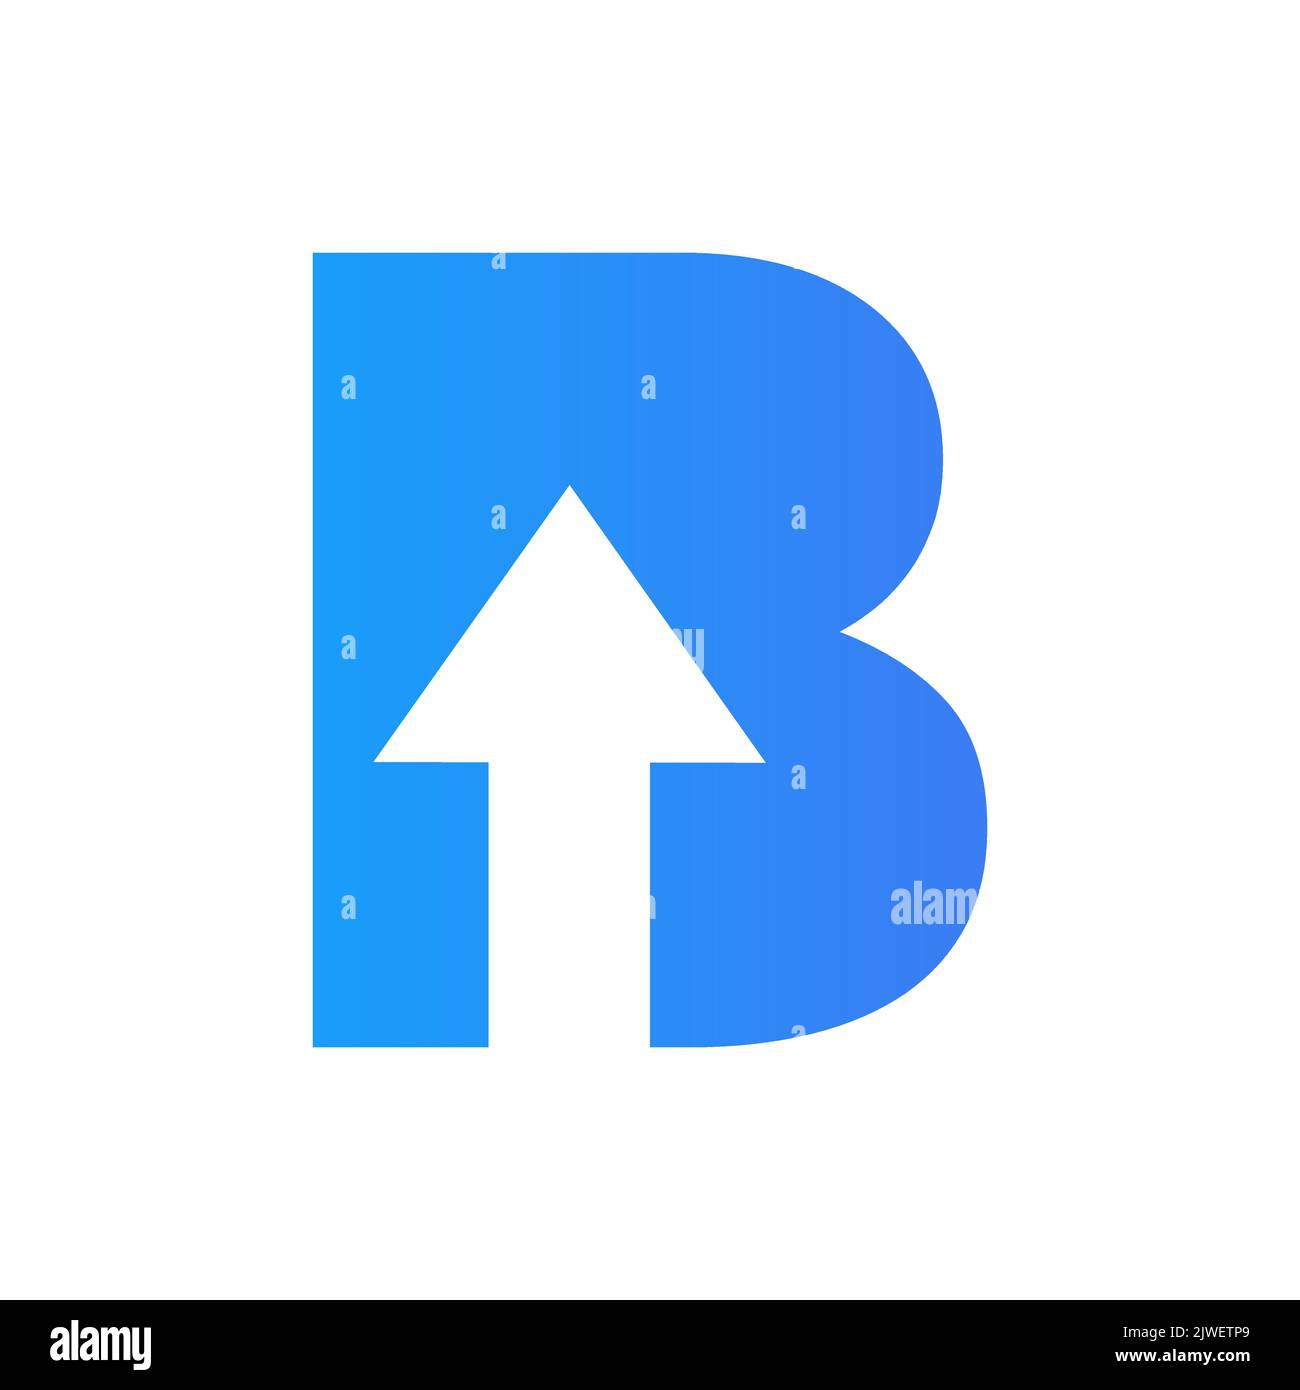 Lettre B logo financier avec flèche de croissance. Elément comptable, modèle de vecteur de symbole d'investissement financier Illustration de Vecteur